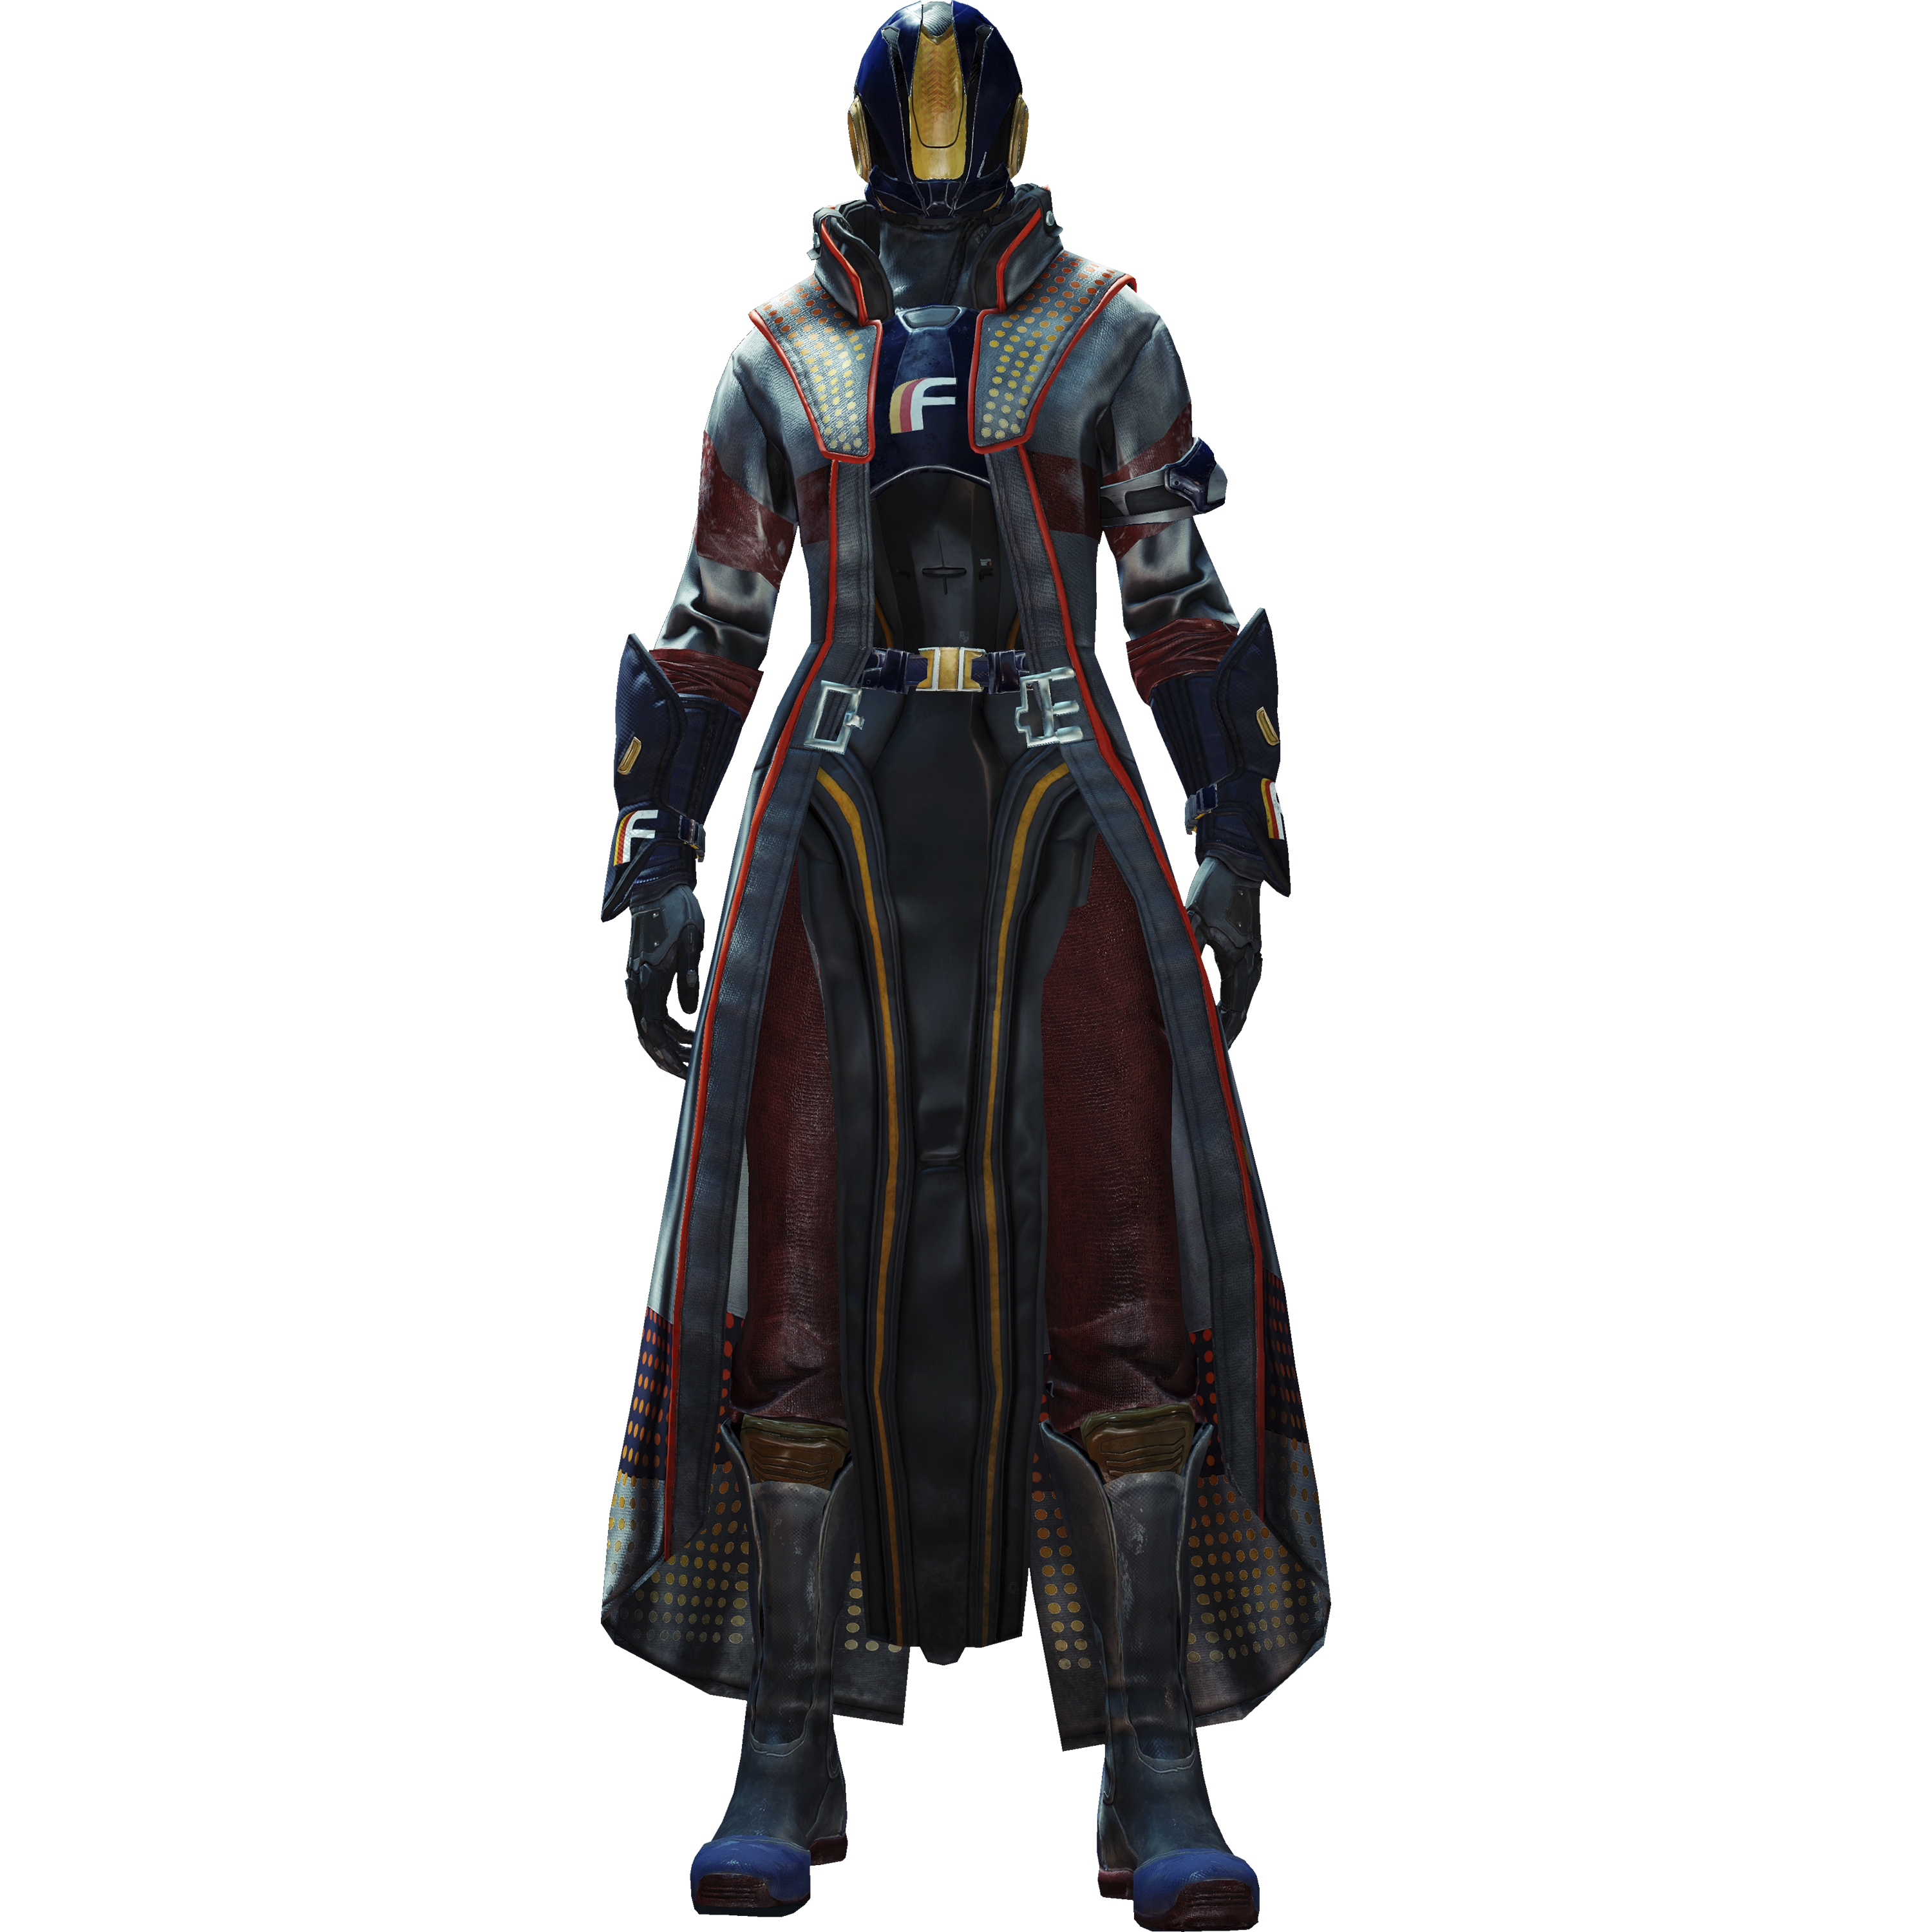 Destiny 2 – варлок – изображение персонажа